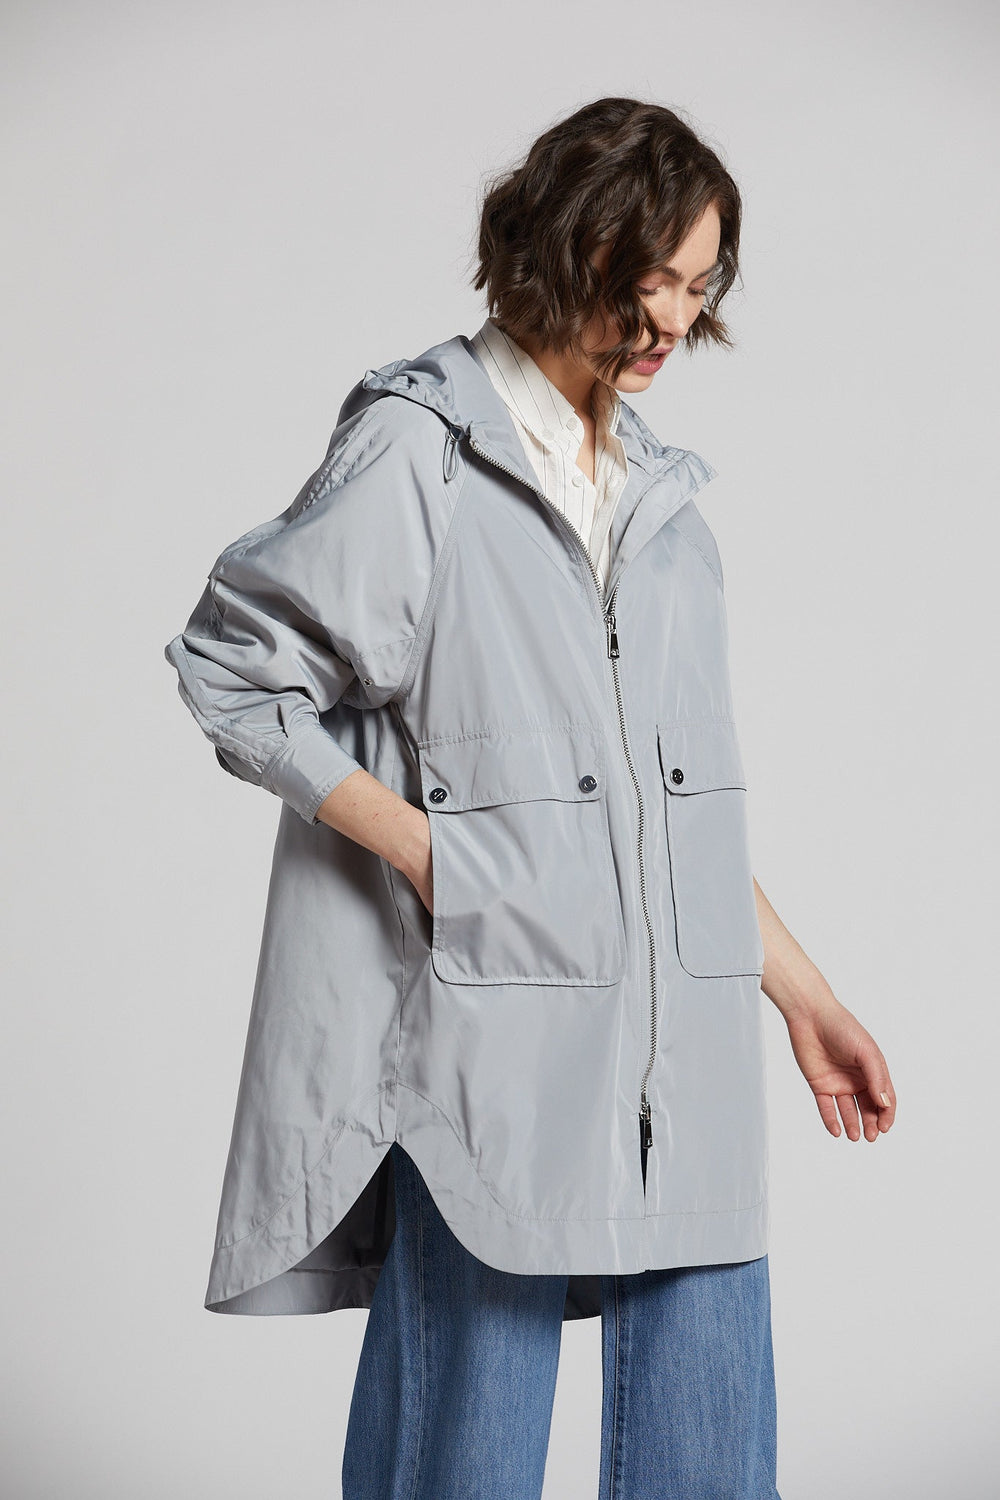 Adroit Atelier Nikita Lightweight Hooded Raincoat in Sea Star